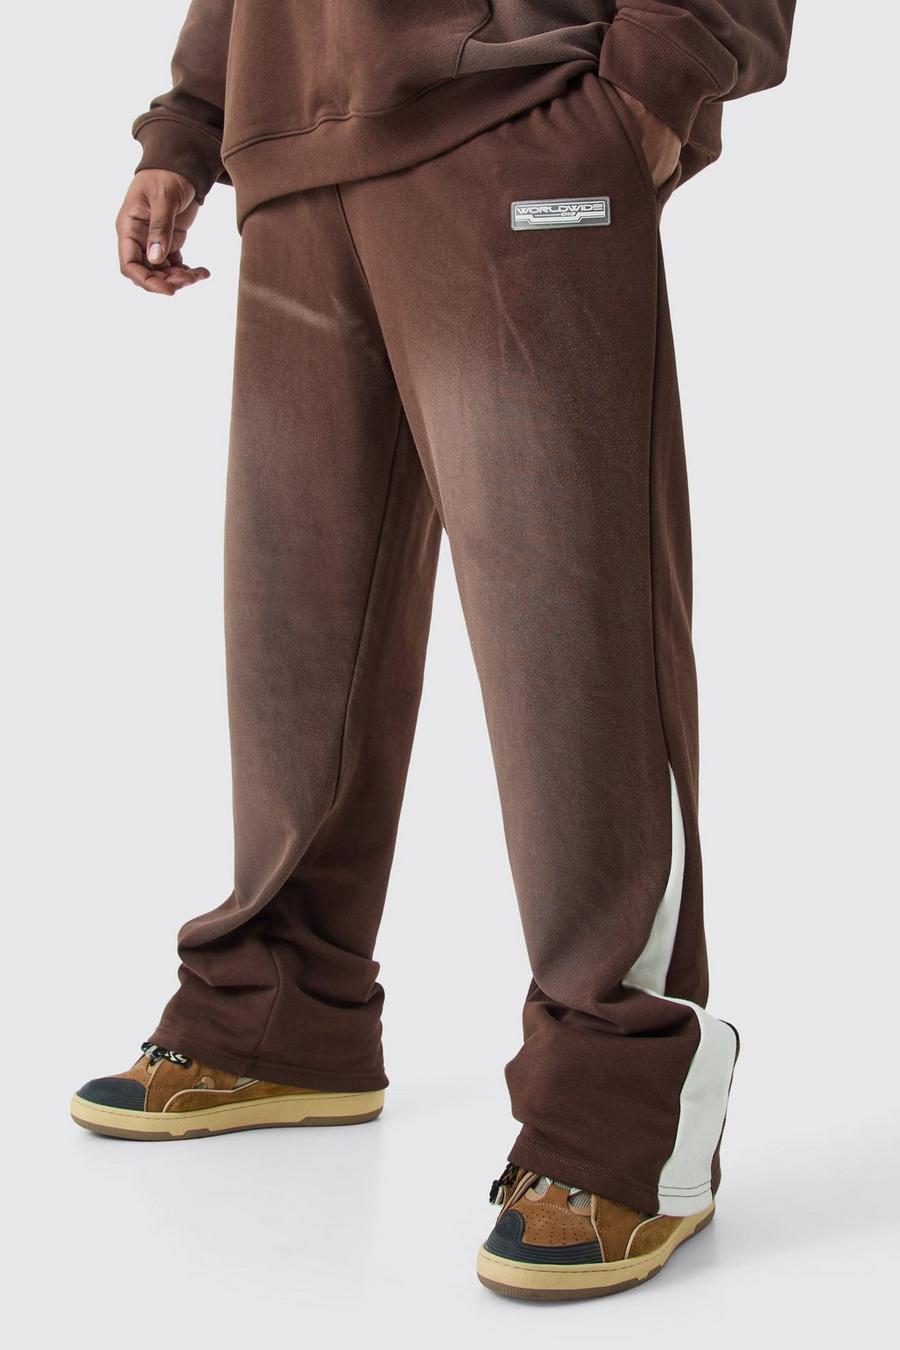 Pantaloni tuta Plus Size Regular Fit slavati con rovescio a ricci e inserti, Chocolate